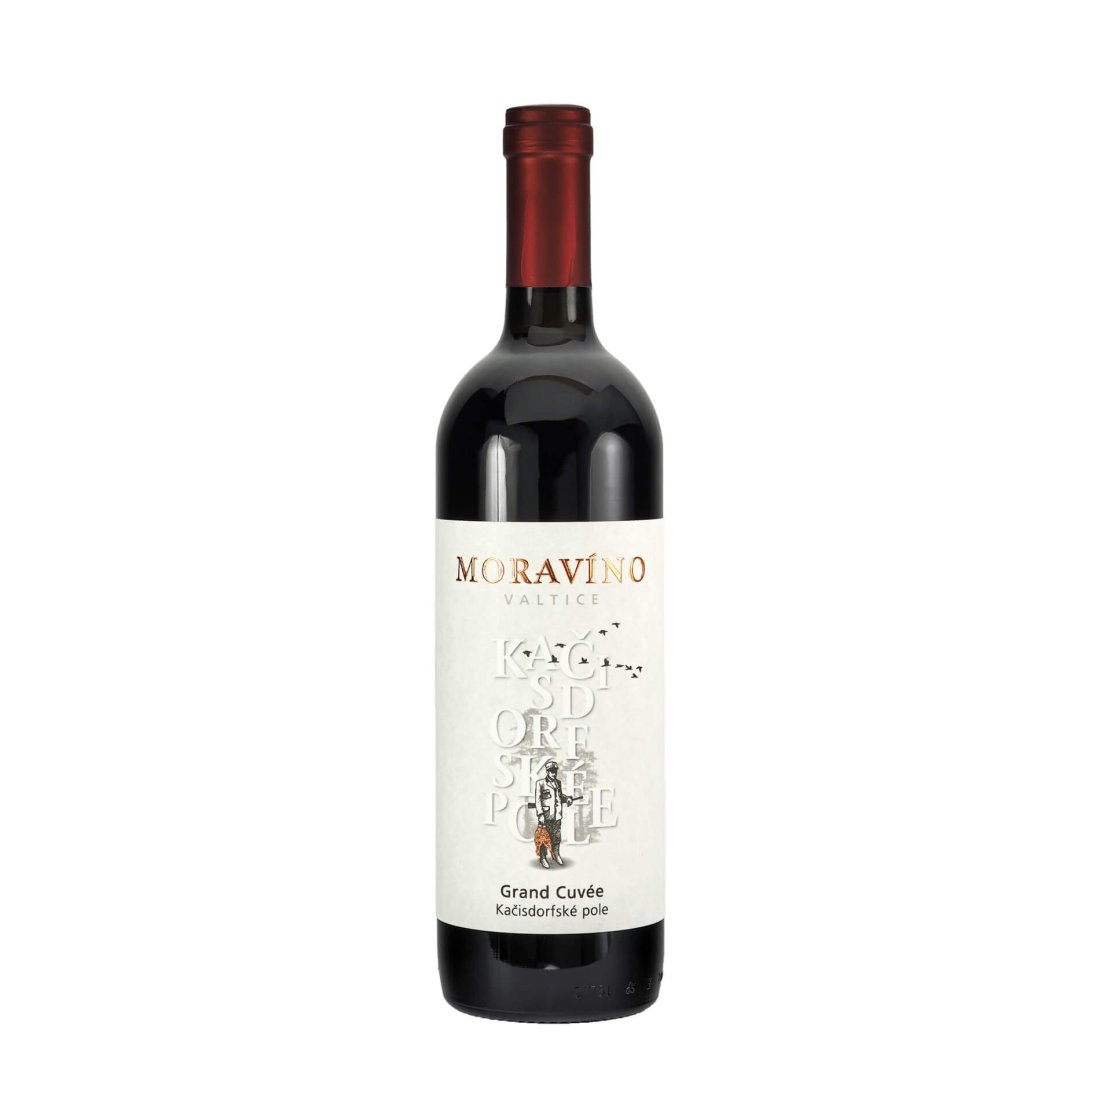 Grand cuvée červené Svatovavřinecké & Cabernet Sauvignon 2020 pozdní sběr MORAVÍNO "Kačisdorfské pole" suché š. 914